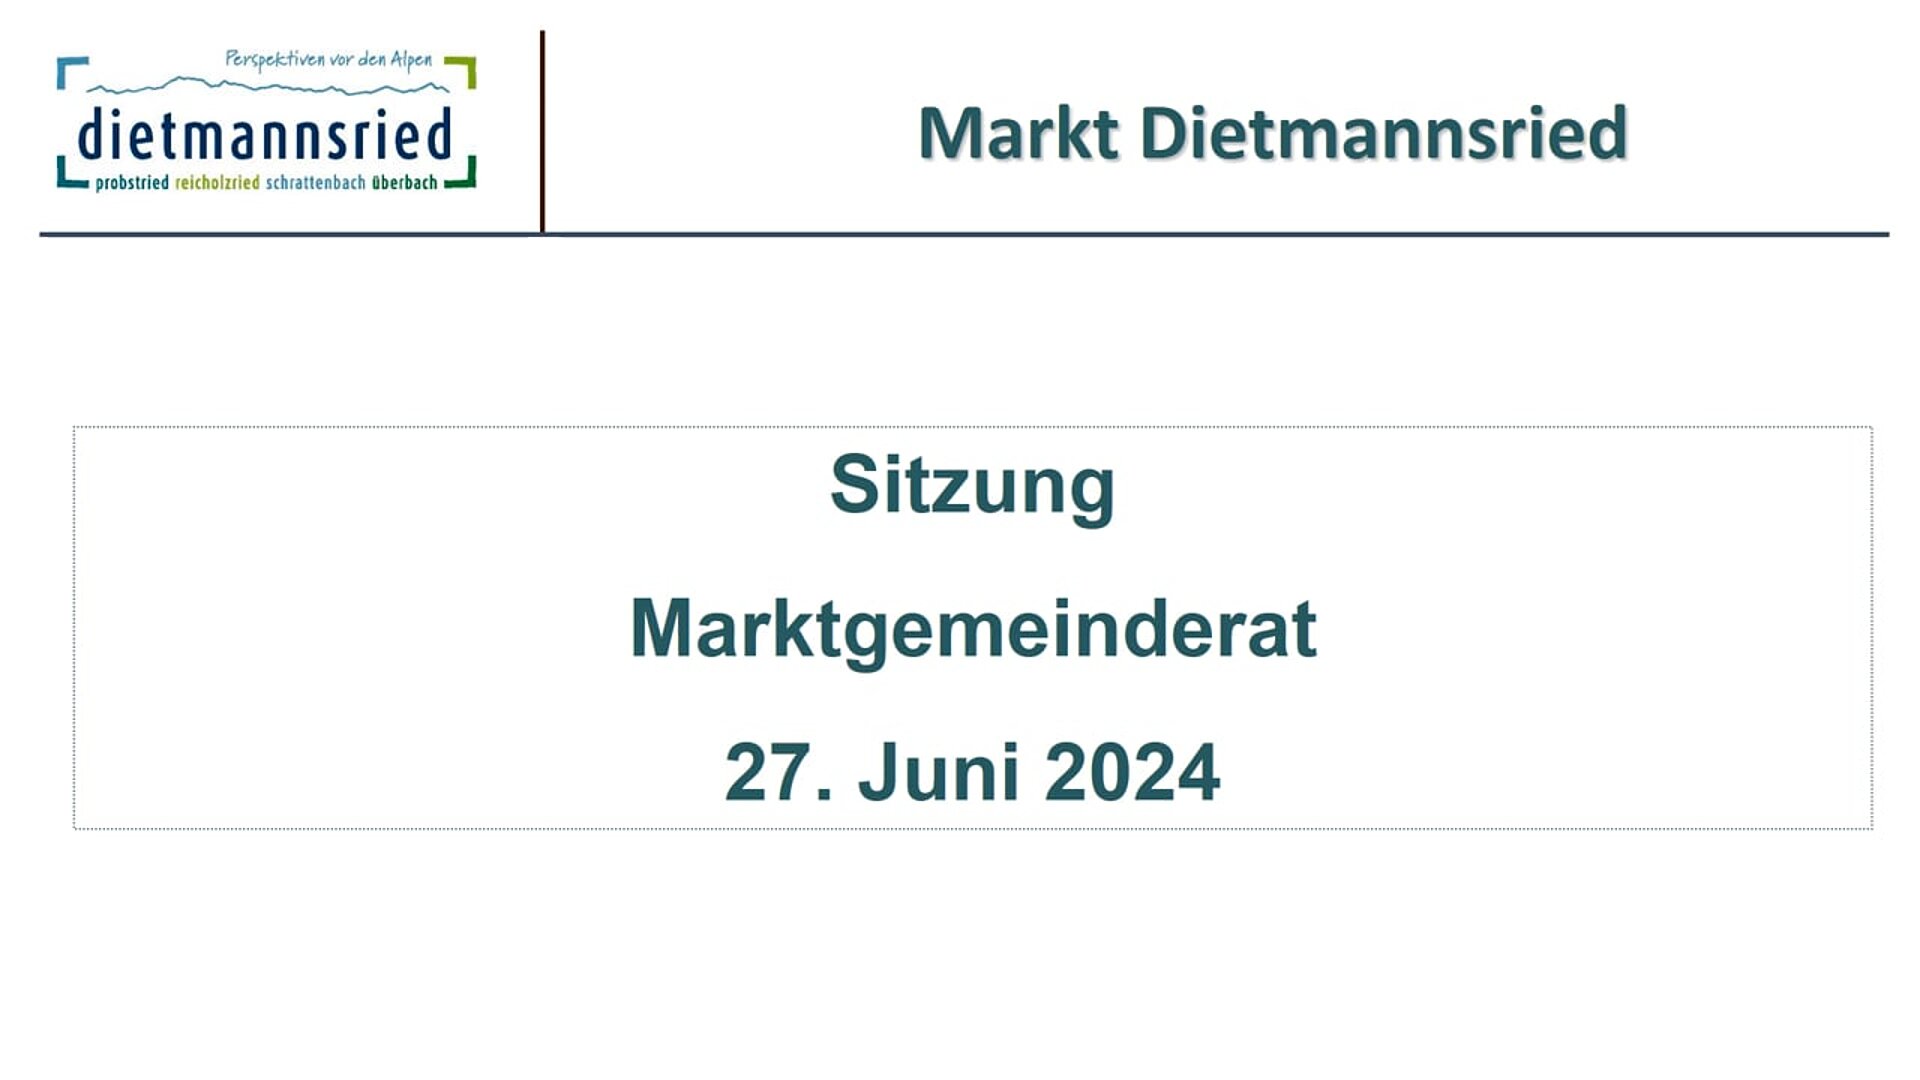 Sitzung Marktgemeinderat vom 27. Juni 2024